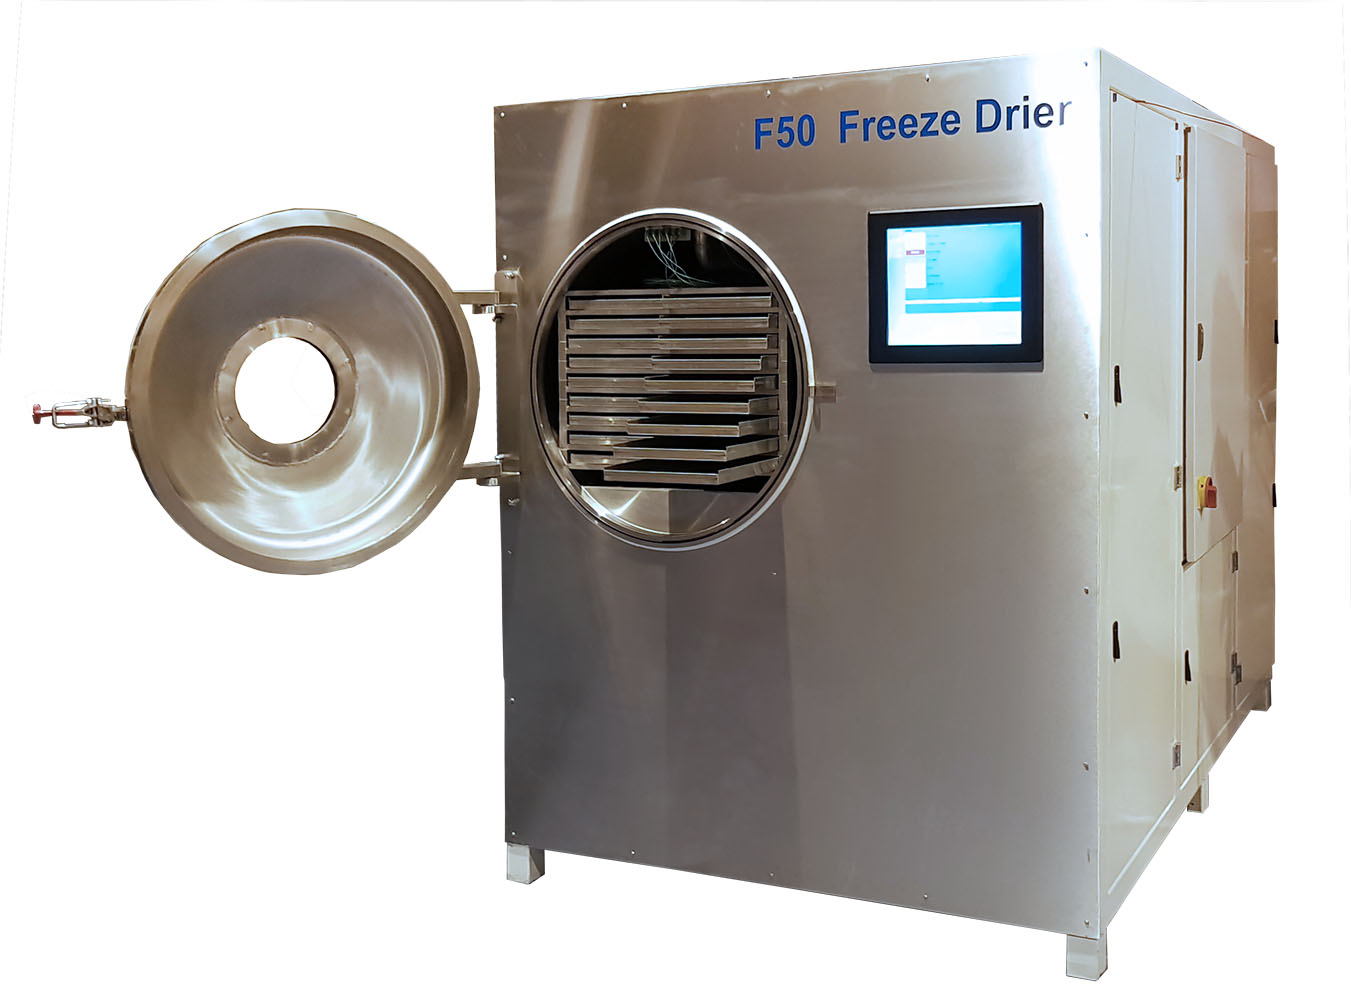 F50 Freeze drier with door open